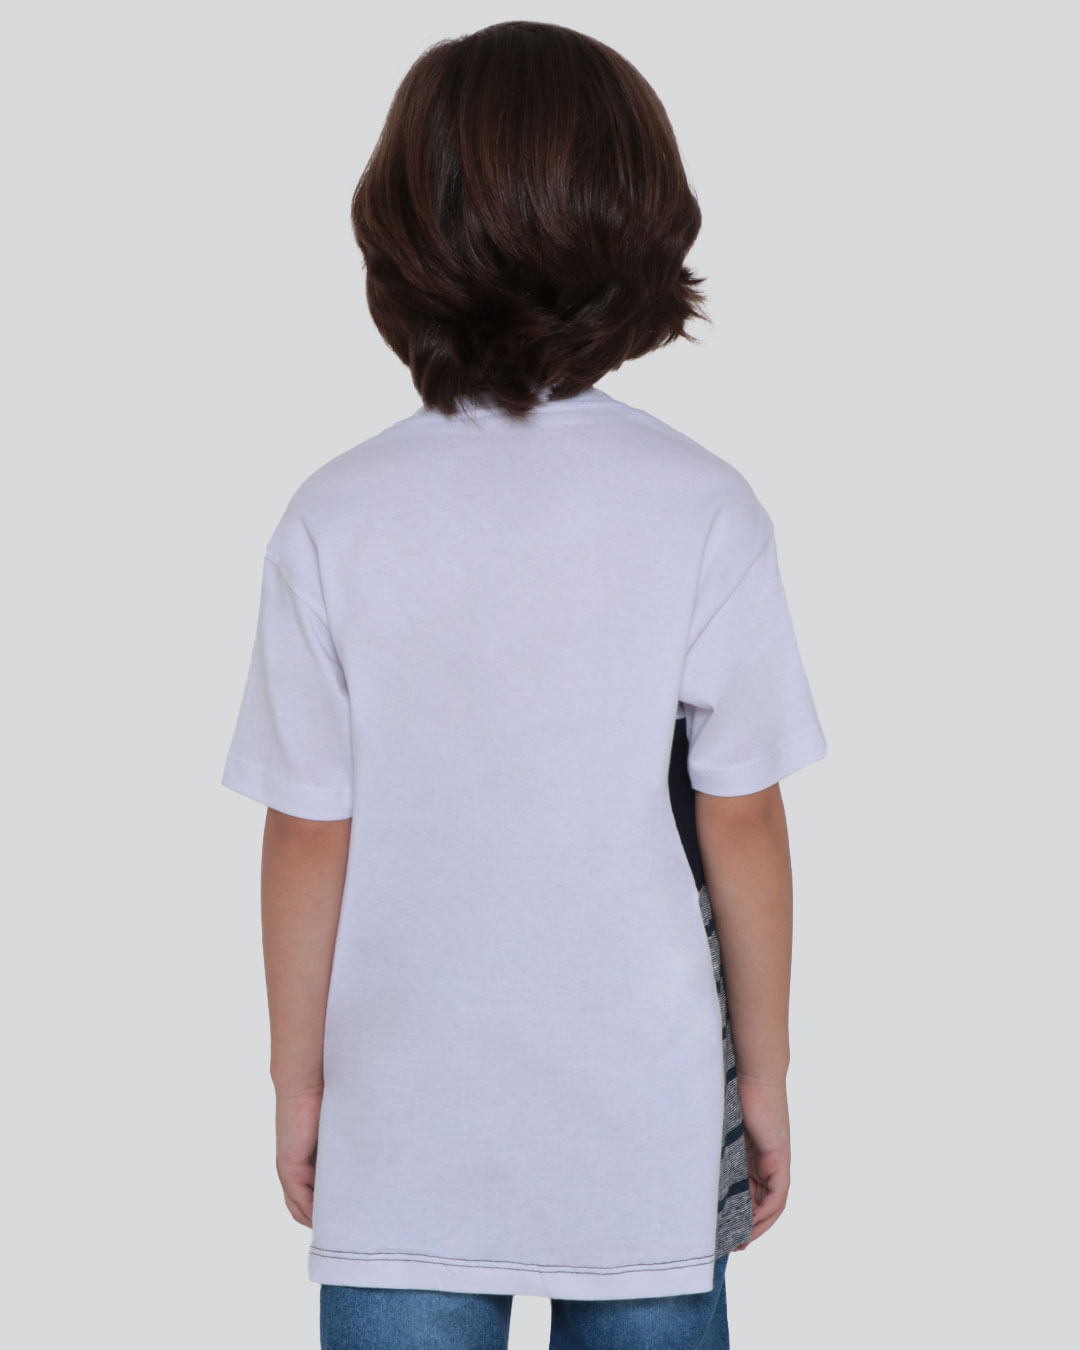 Camiseta-Infantil-Recorte-Branca